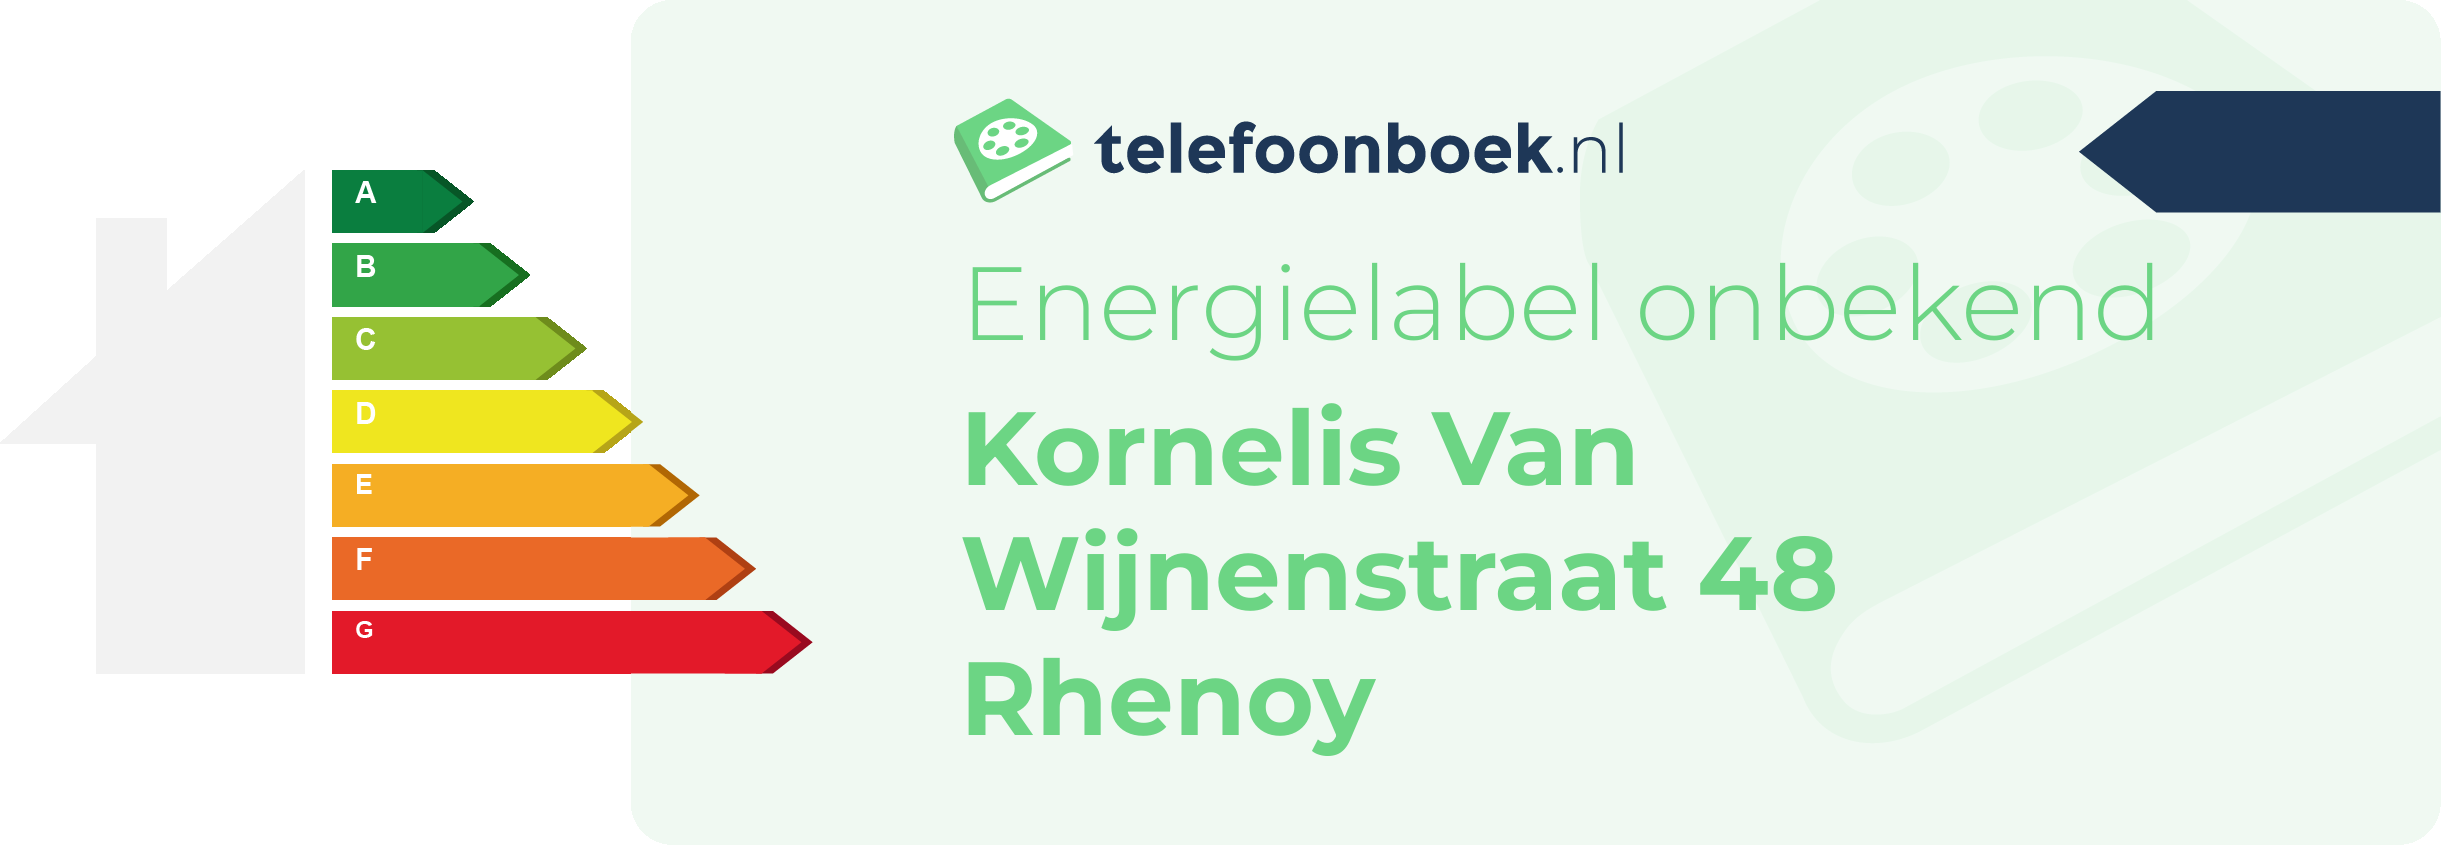 Energielabel Kornelis Van Wijnenstraat 48 Rhenoy